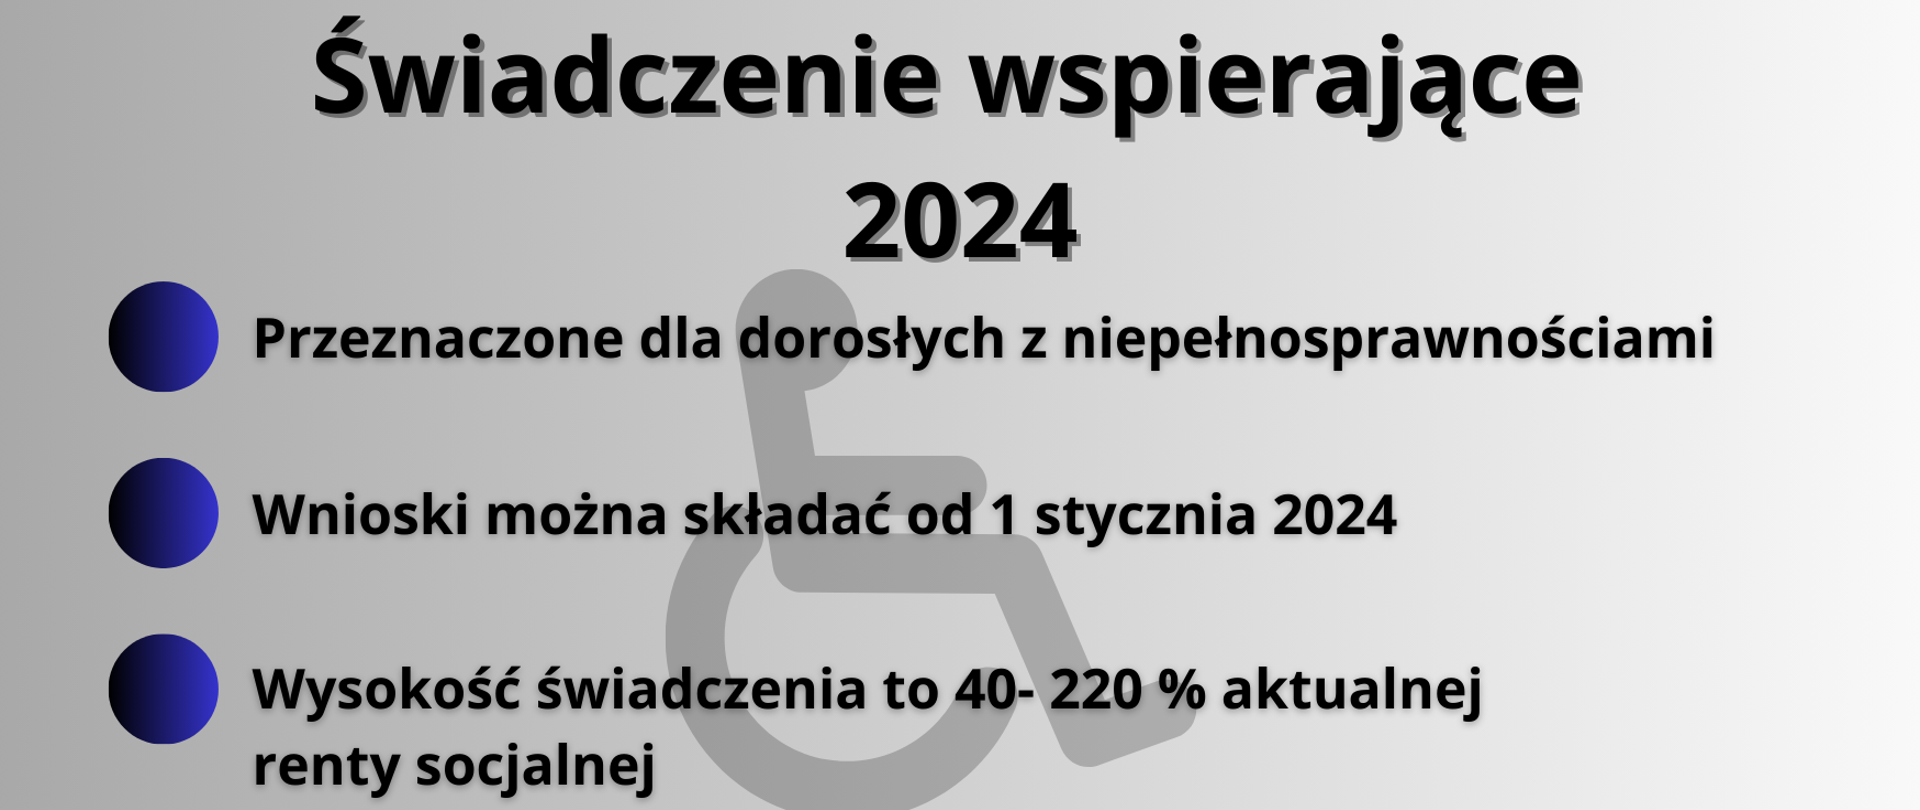 Świadczenie wspierające 2024 Przeznaczone dla dorosłych z niepełnosprawnościami Wnioski można składać od 1 stycznia 2024 Wysokość świadczenia to 40- 220 % aktualnej renty socjalnej